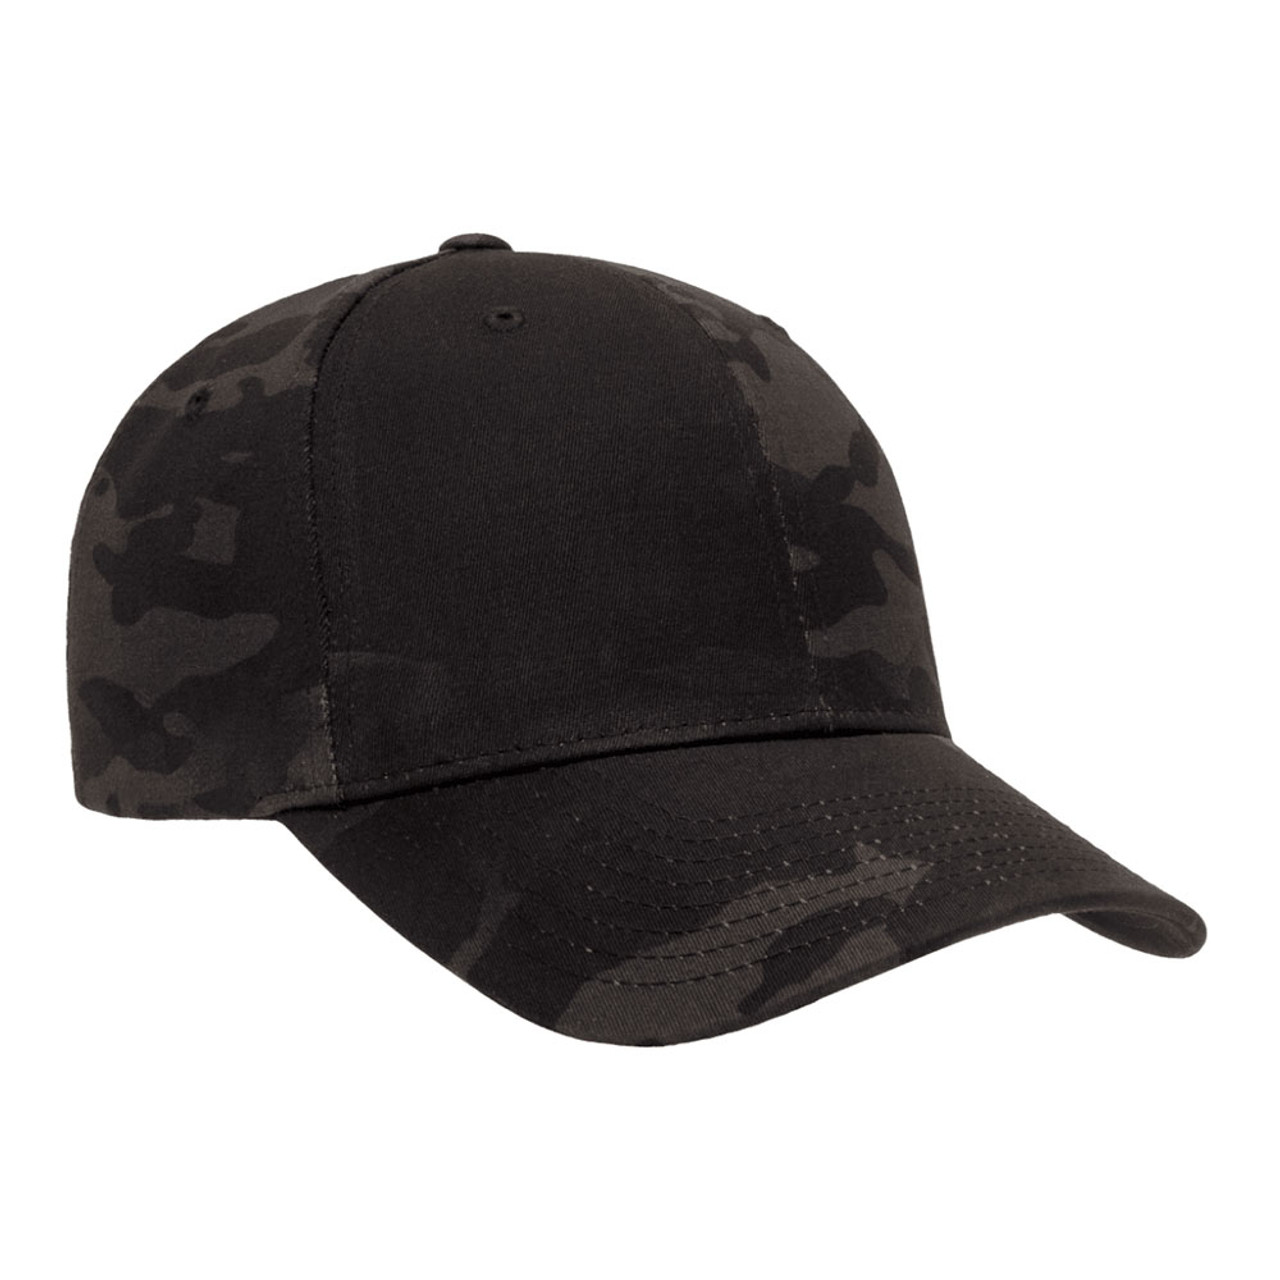 Flexfit Multicam Cap - One Dozen | The Jac Hat